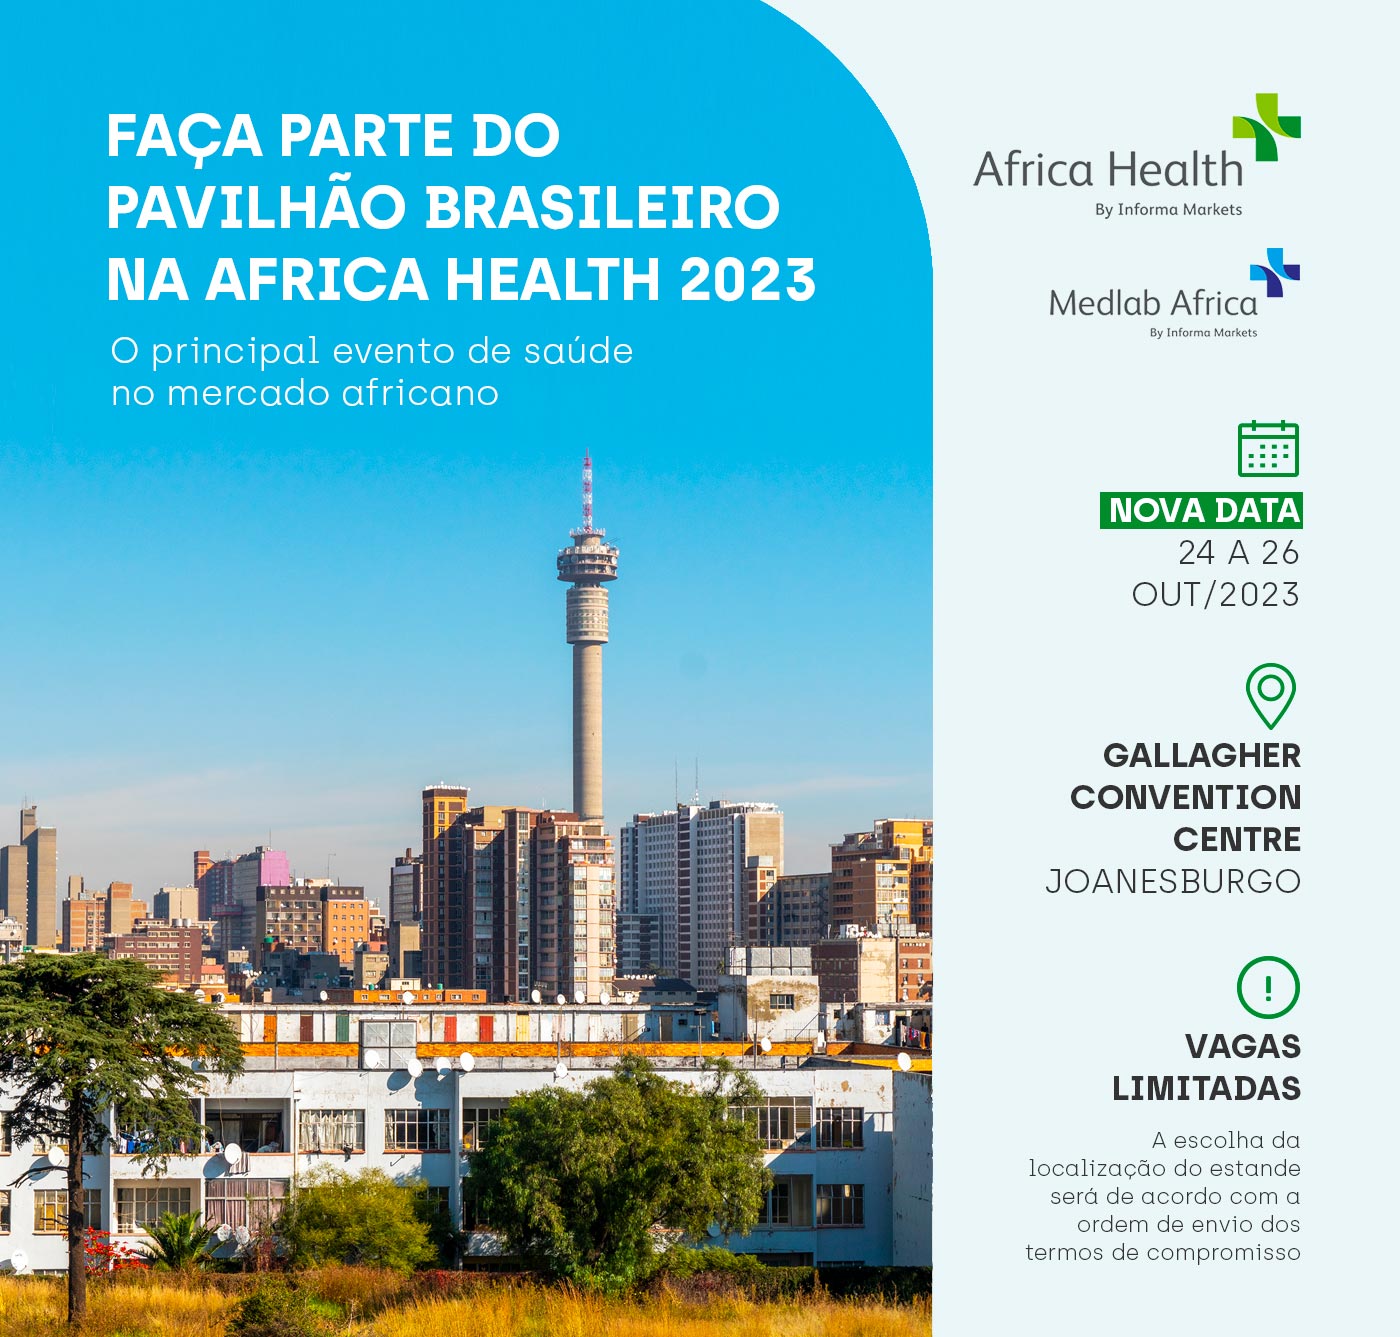 Africa Health 2023 Faça parte do pavilhão brasileiro